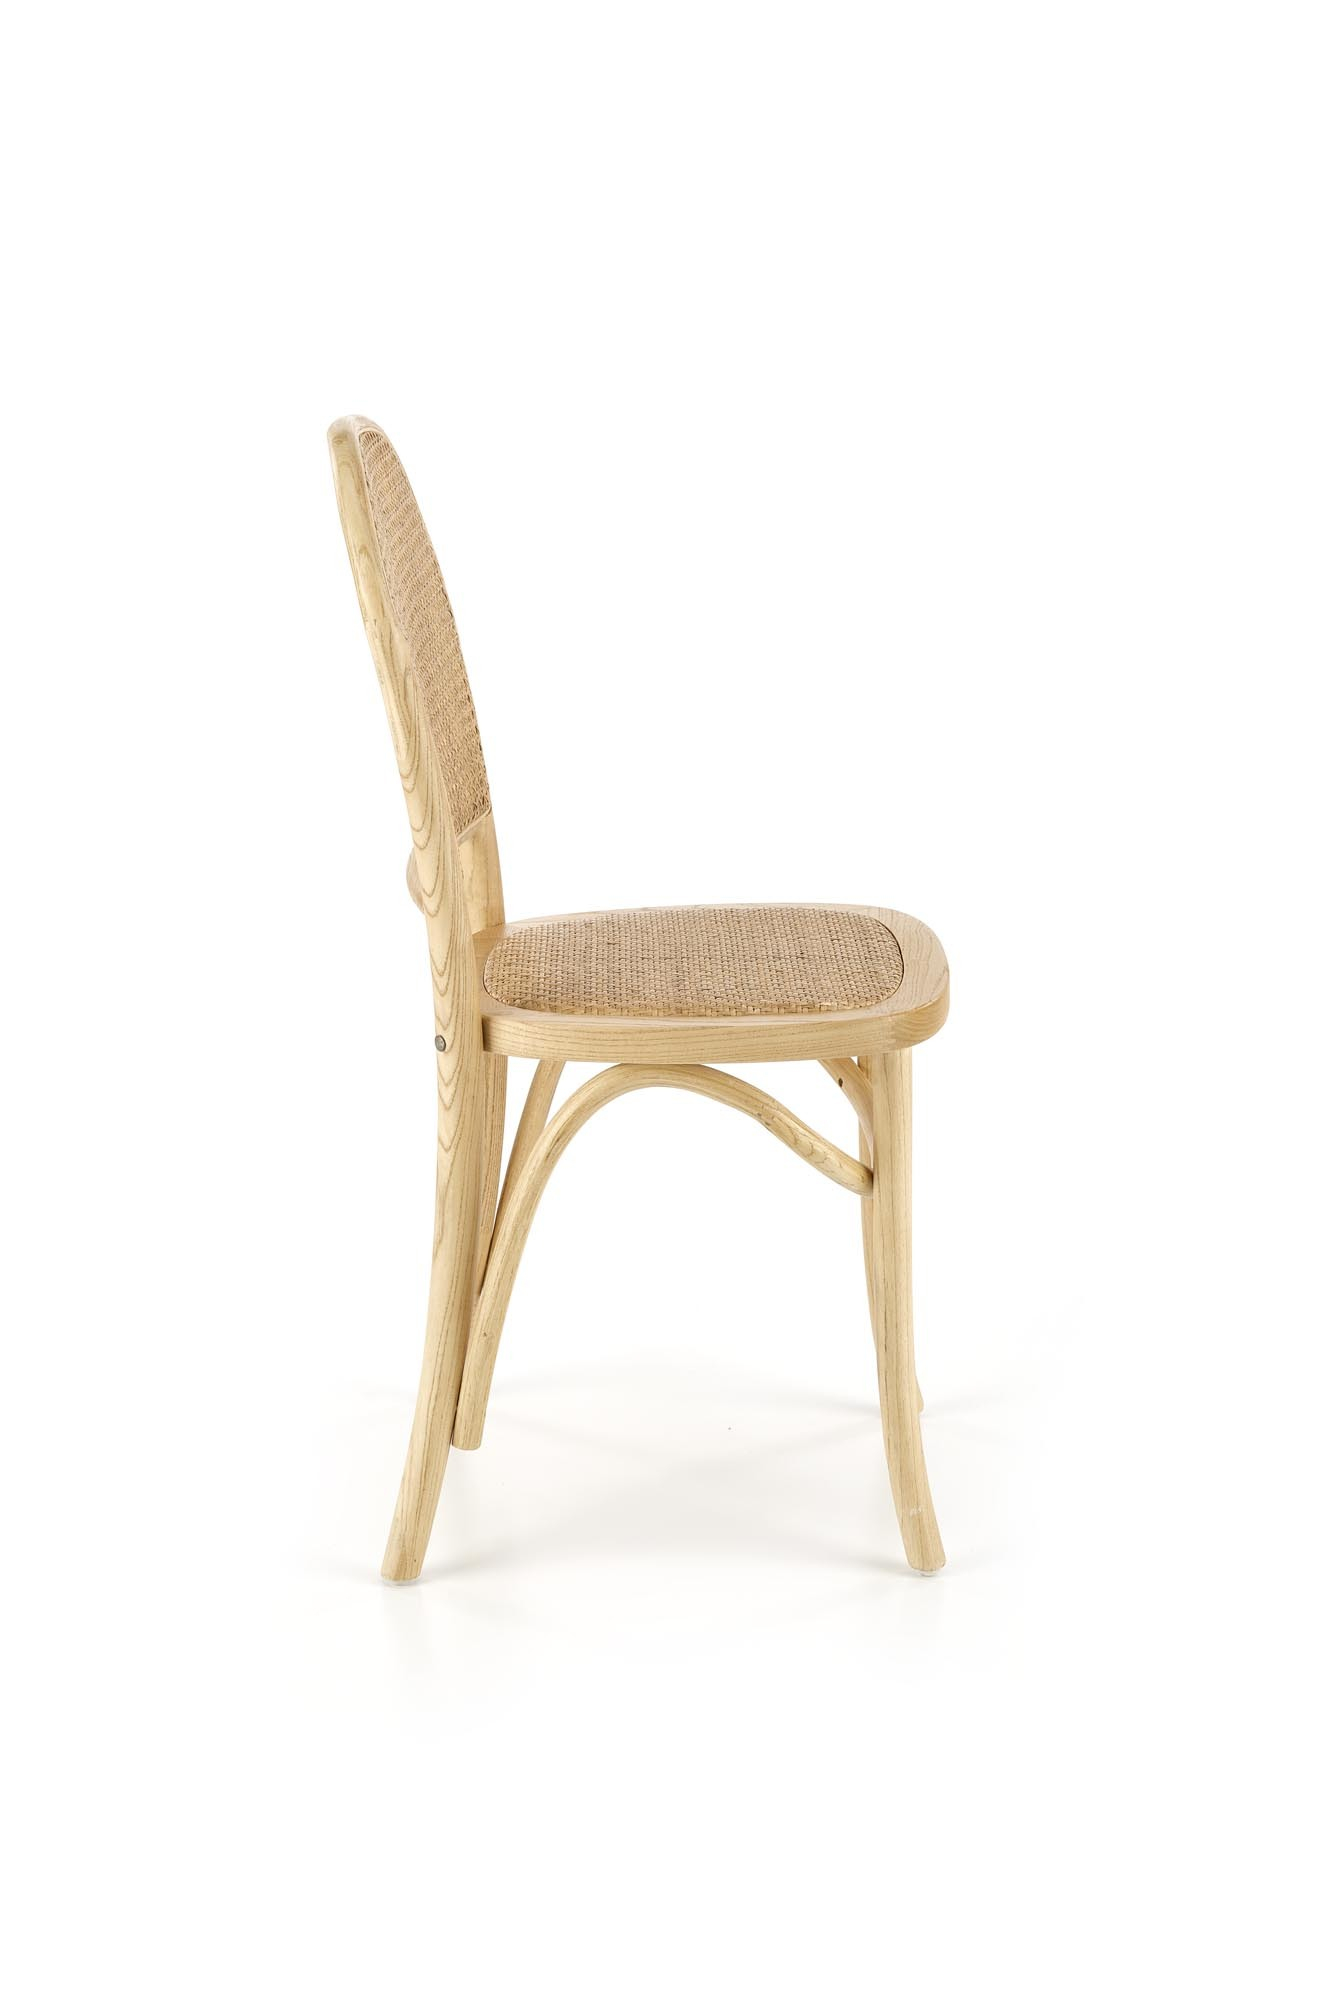 K502 krzesło naturalny